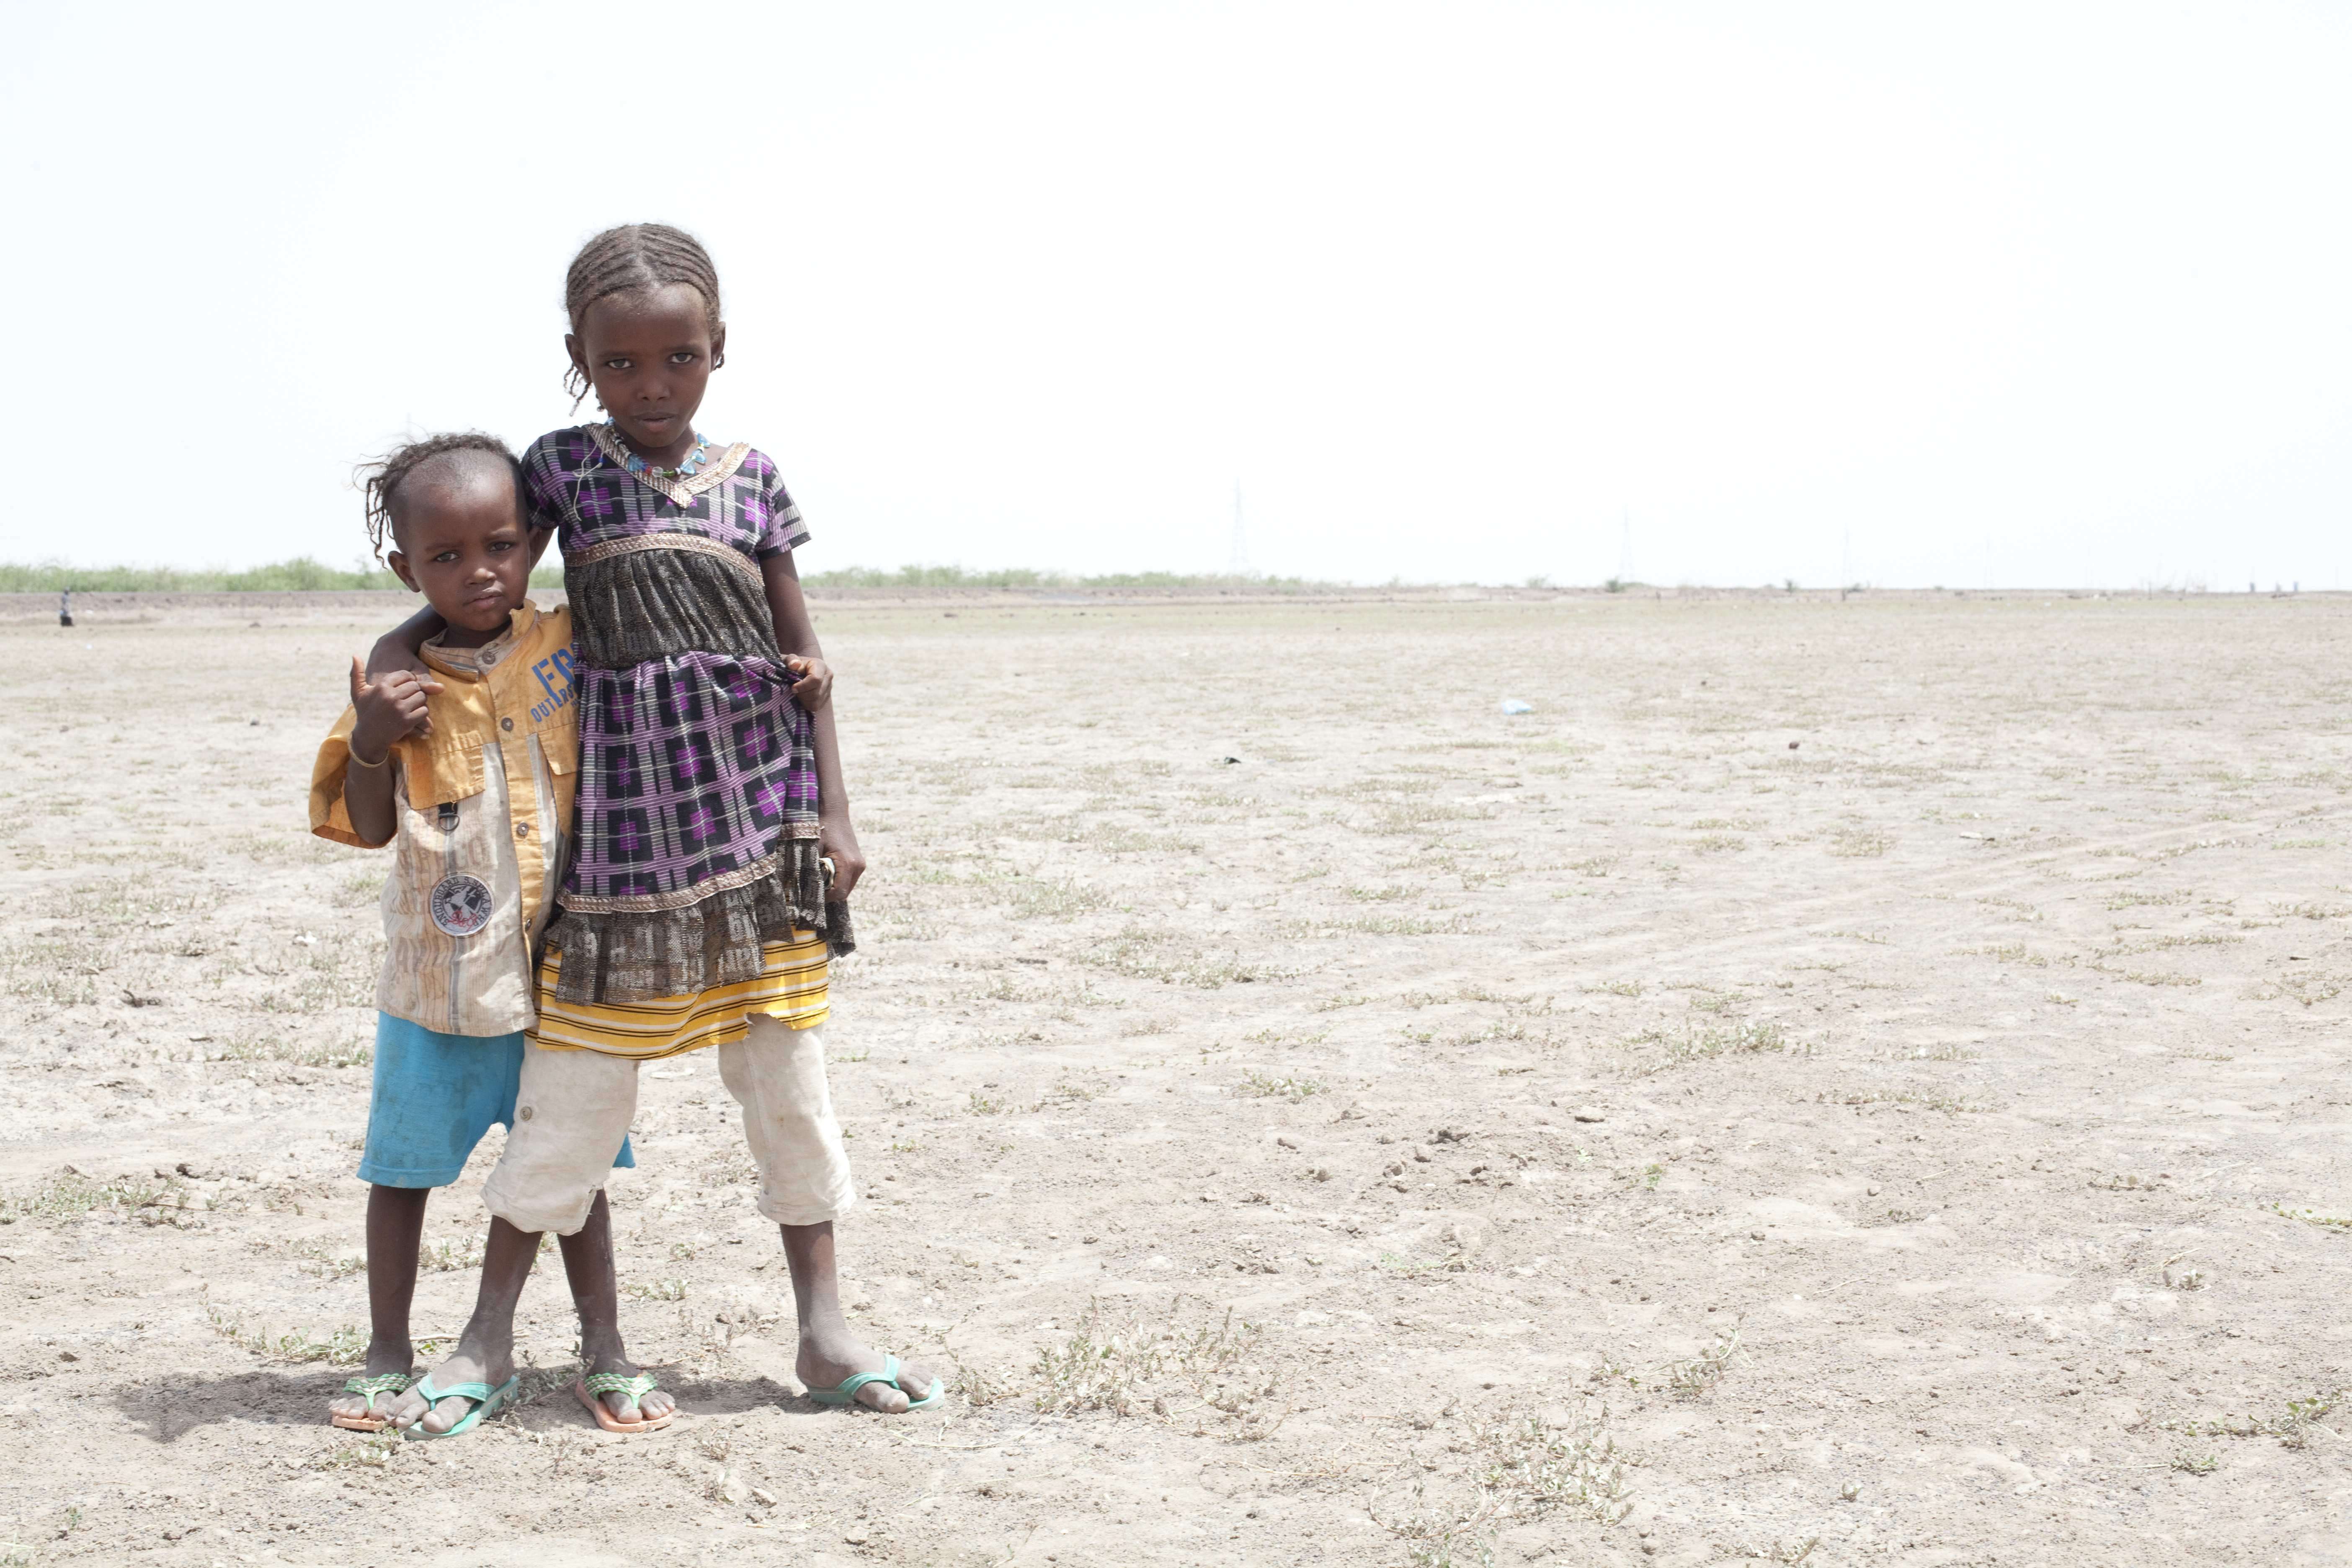 Nomaden Kinder - Humanitäre Hilfe für Dürreopfer in Äthiopien, Afar Nomaden, Kinder, Wüste, zwei Mädchen